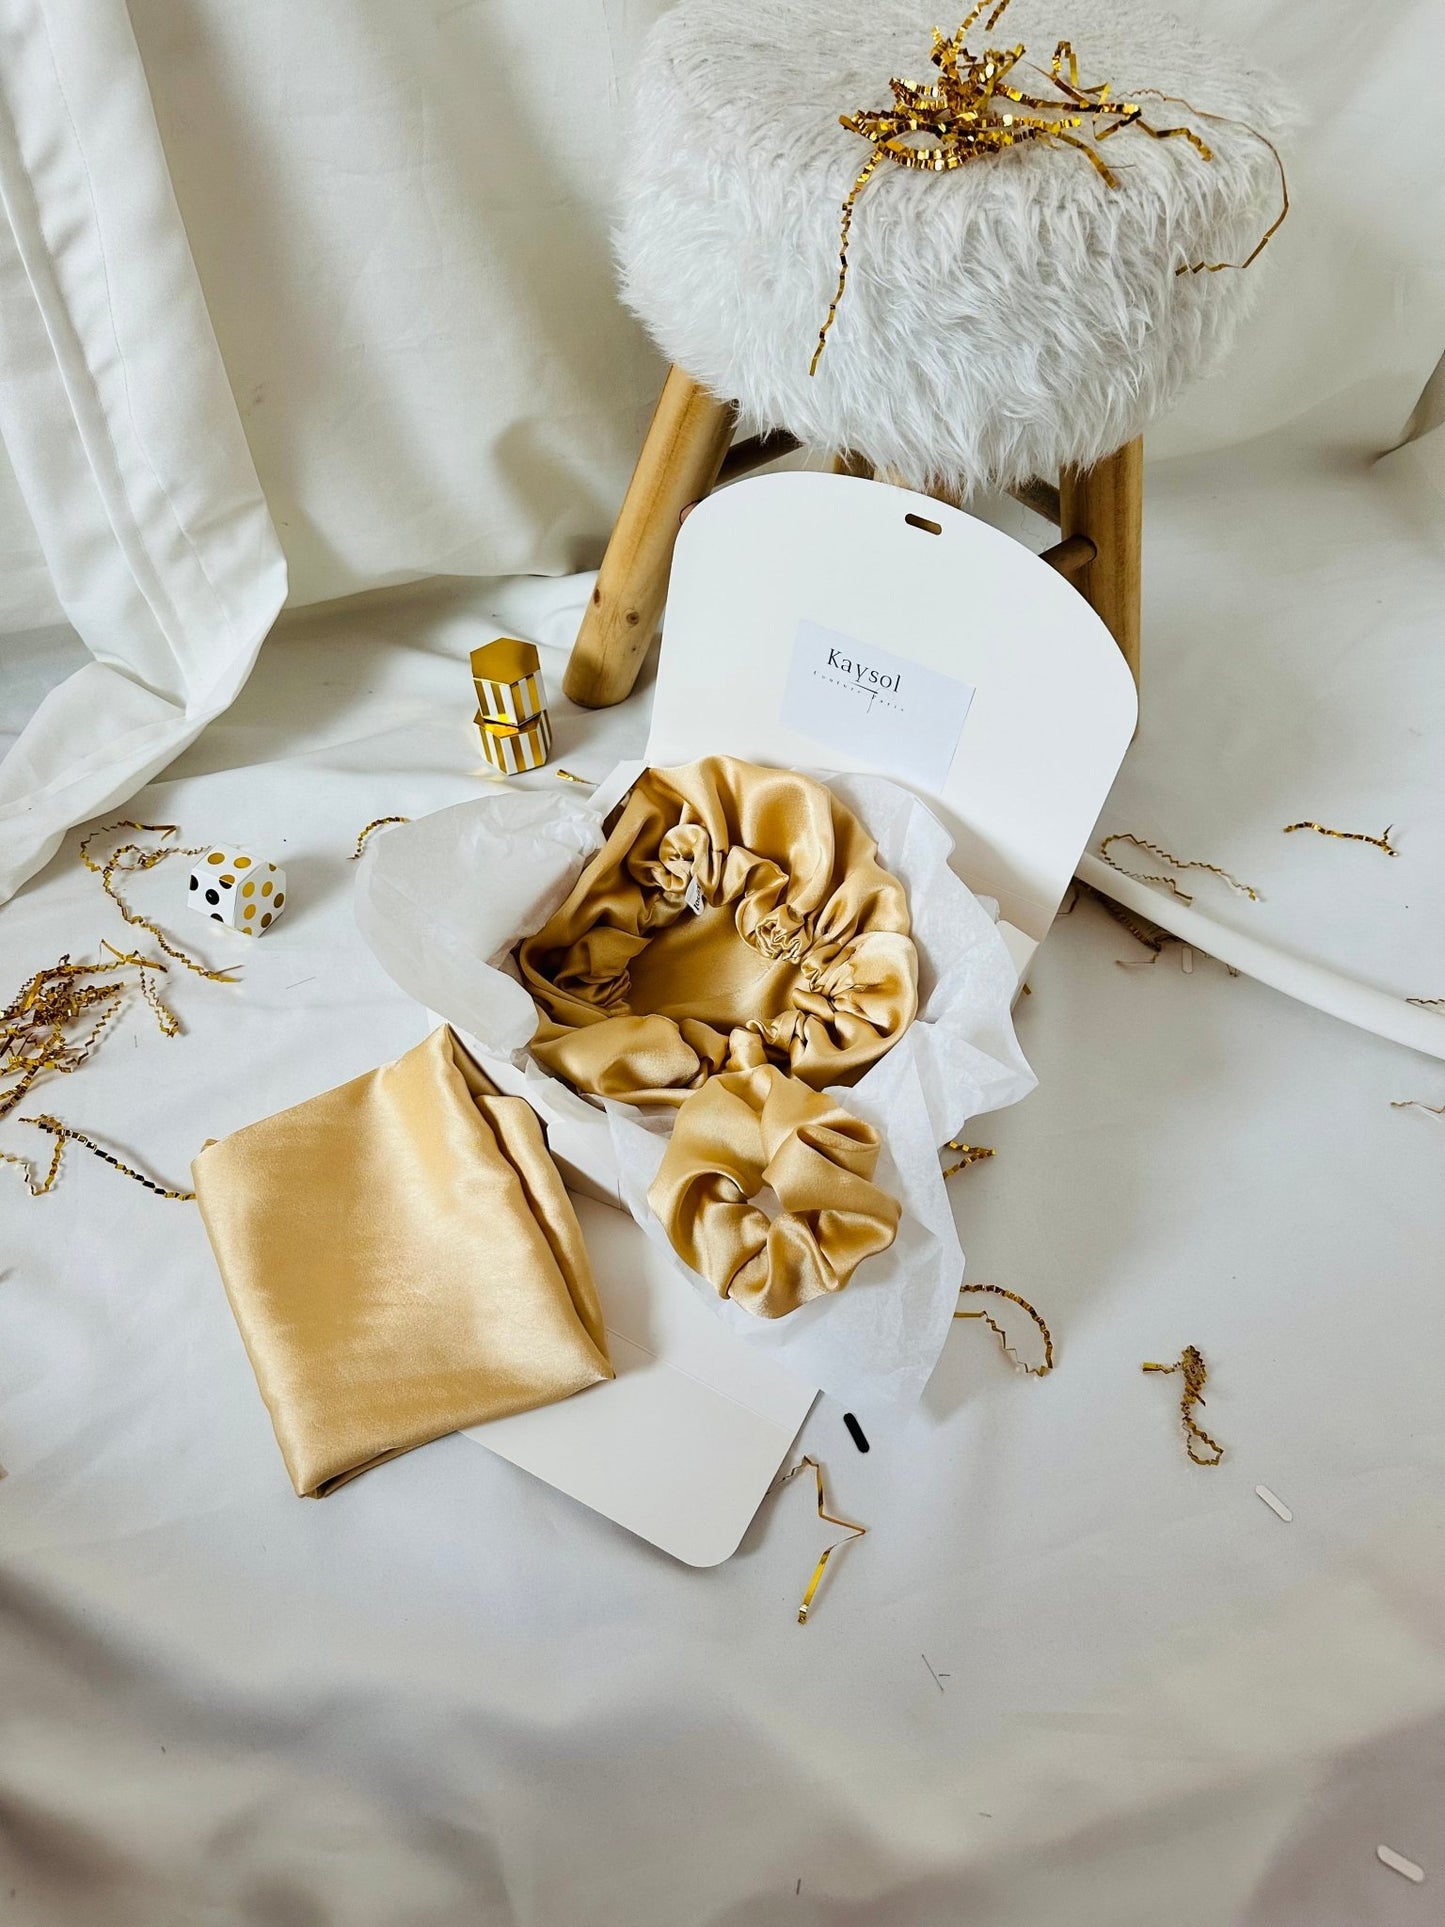 Choix de Couleur - Box Taies d’oreillers en Soie avec bonnet en Soie et chouchou en soie Assorti - Kaysol Couture